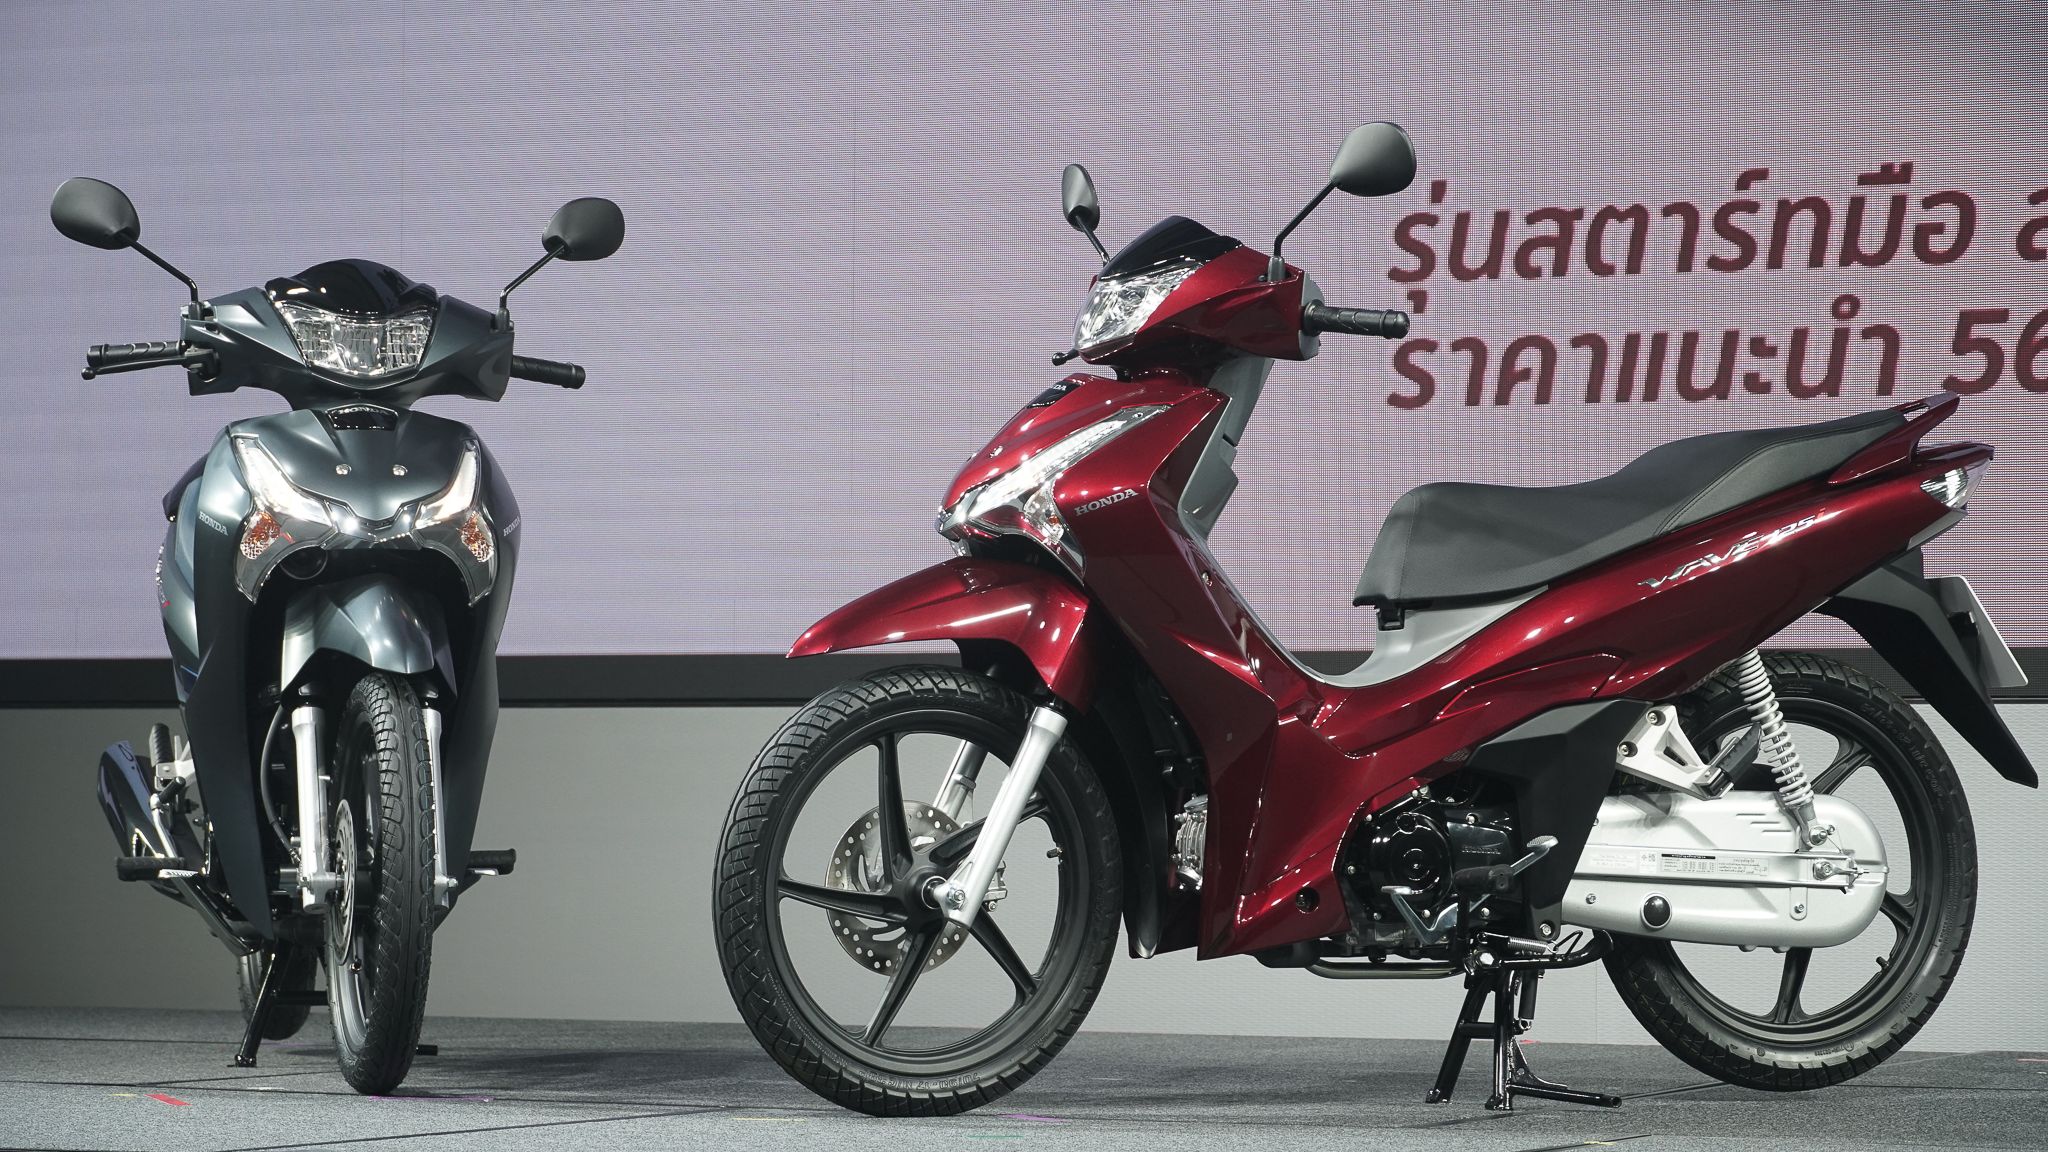 Giải mã Honda Wave 125i nhập khẩu Thái Lan khiến dân Việt phát sốt